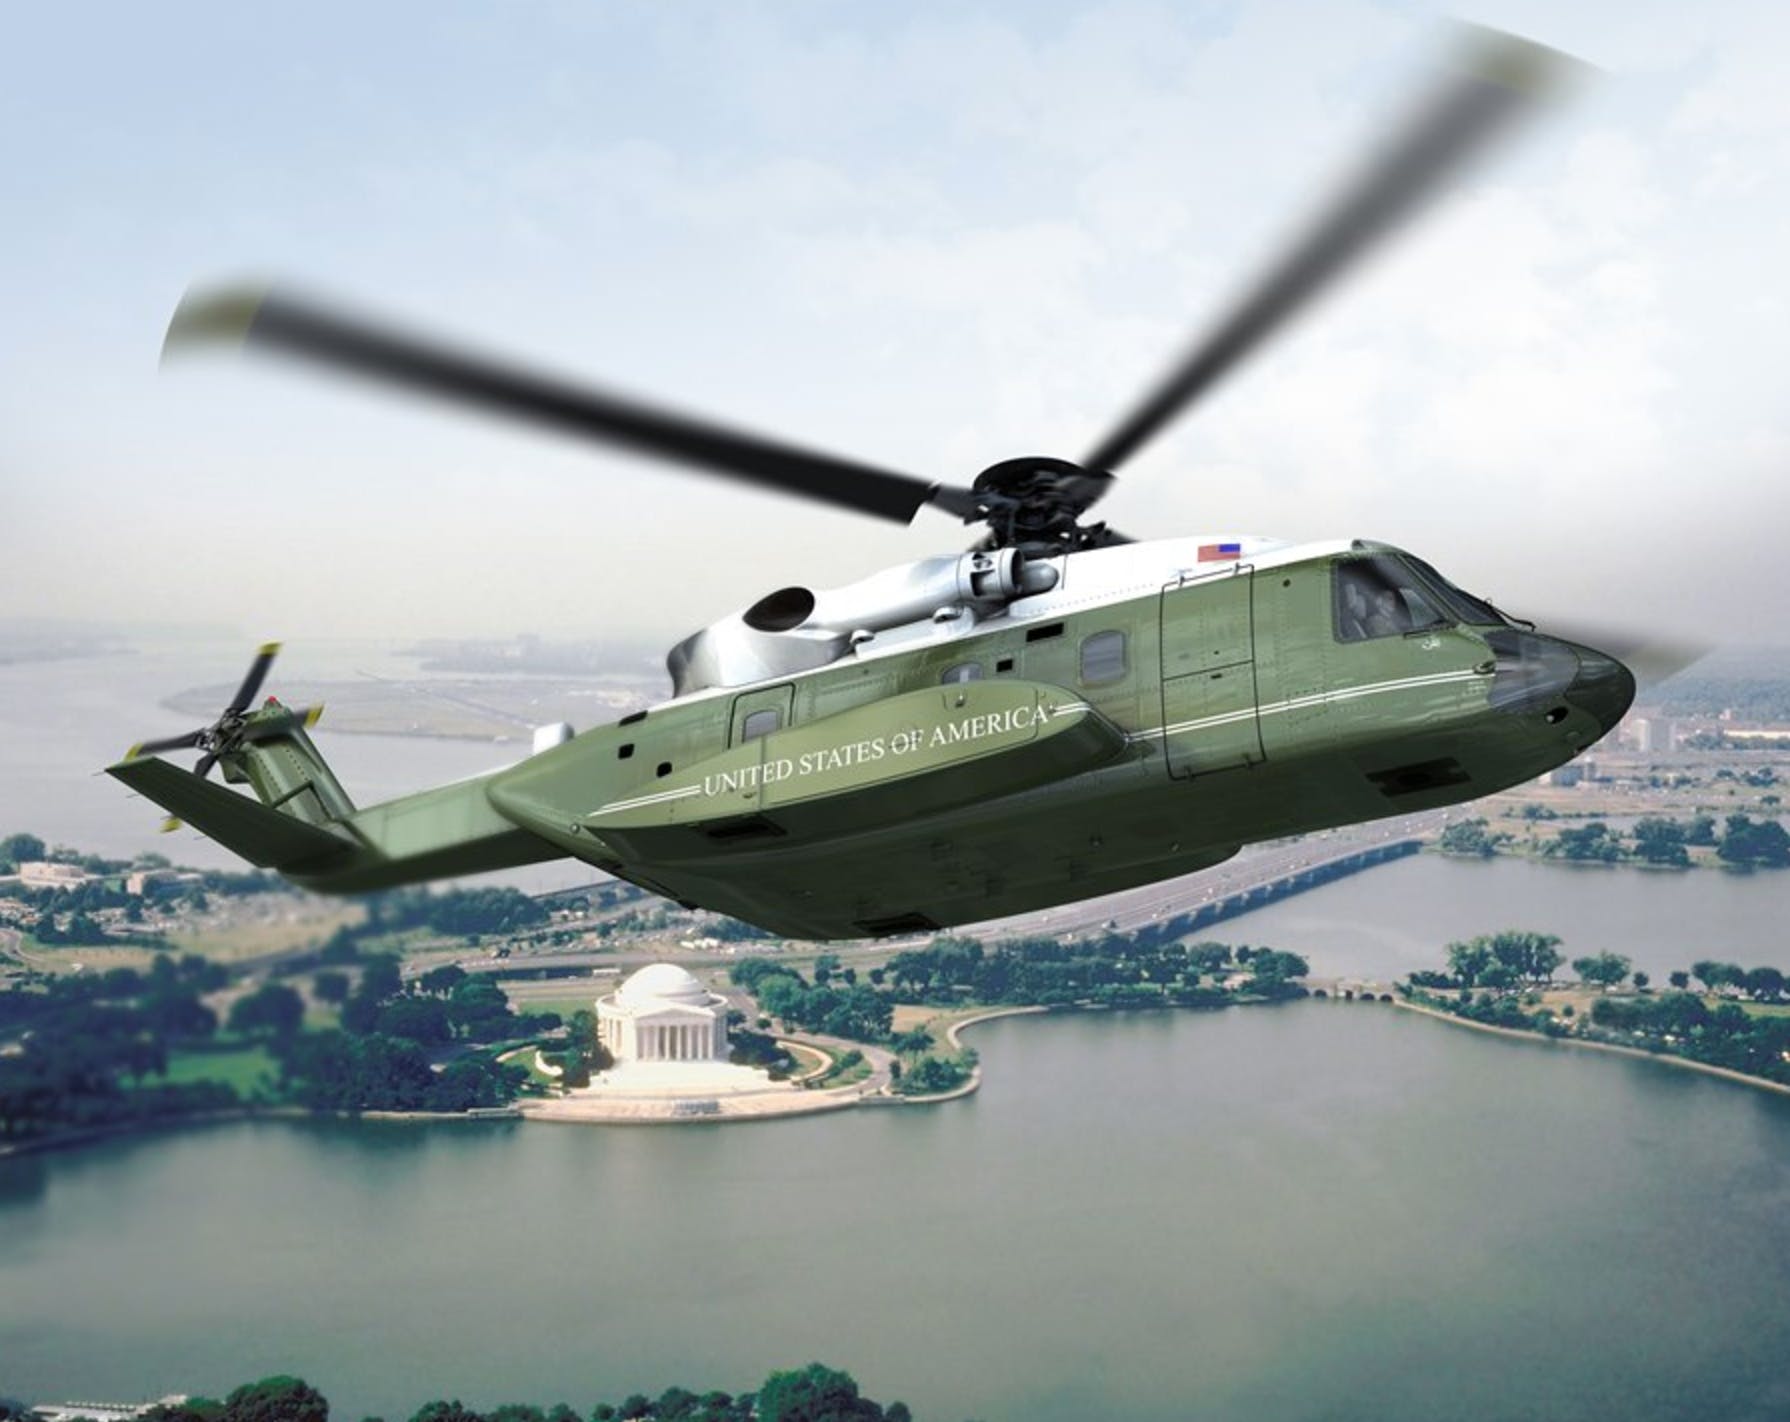 سیکورسکی VH-92A؛ هلیکوپتر جدید و پیشرفته مخصوص رییس جمهور ایالات متحده